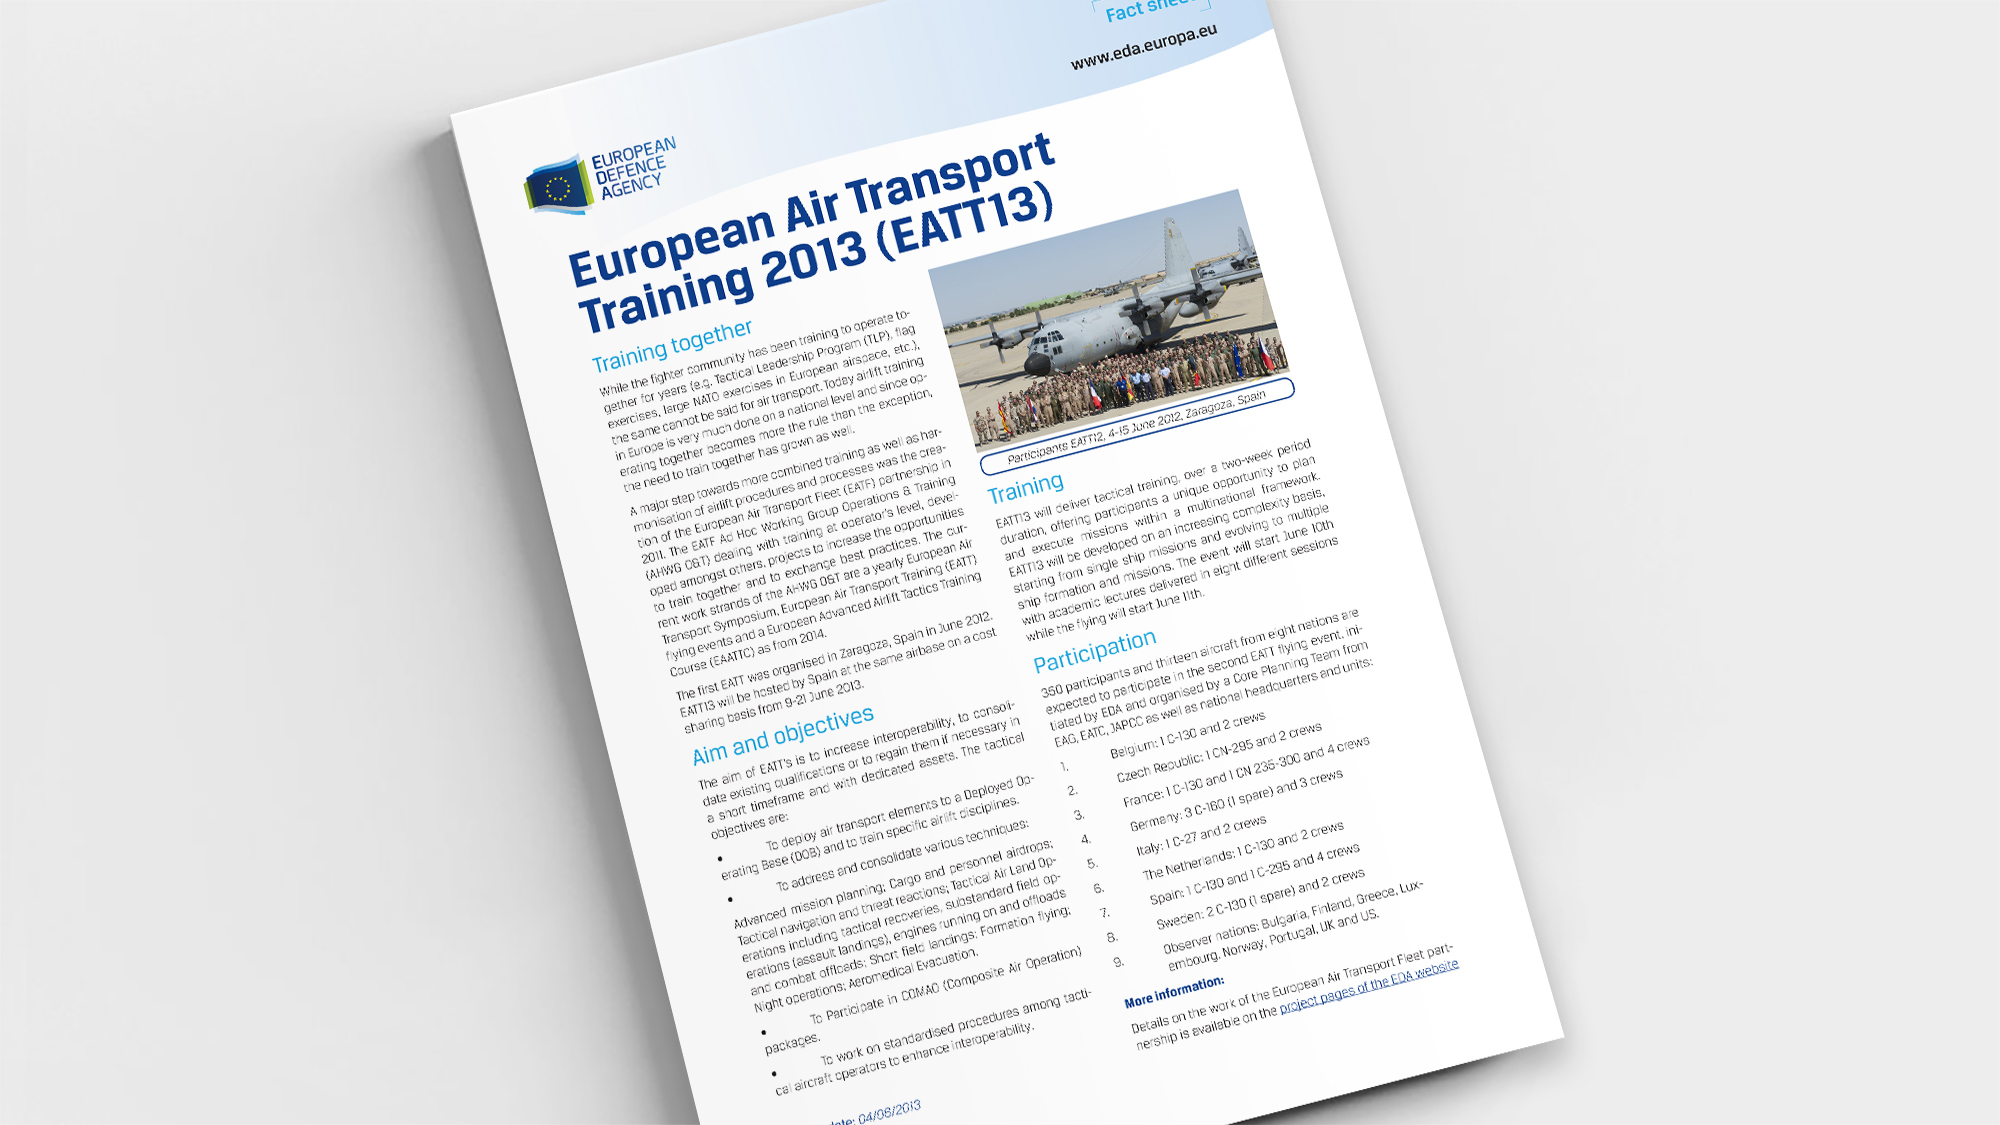 Factsheet European Air Transport Training 2013 (EATT13)